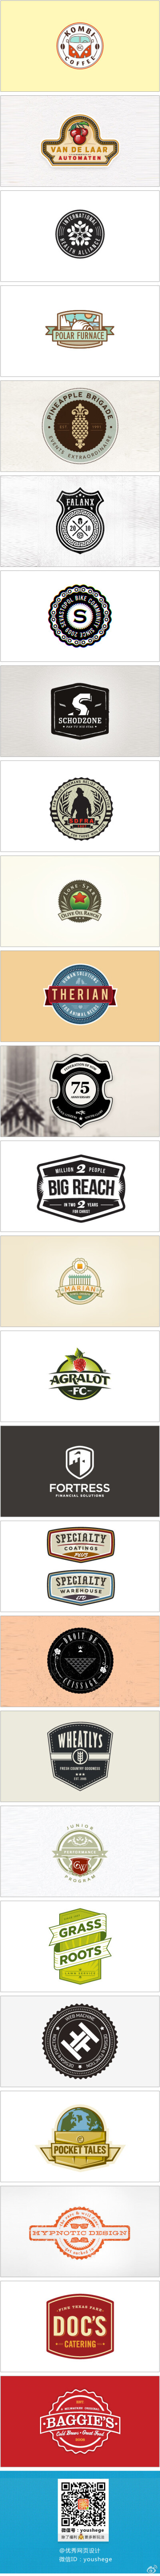 【早安Logo！一组超赞的徽章元素Logo设计】@啧潴要穷游四方哈哈 更多创意Logo请戳→http://t.cn/zTzjpDx